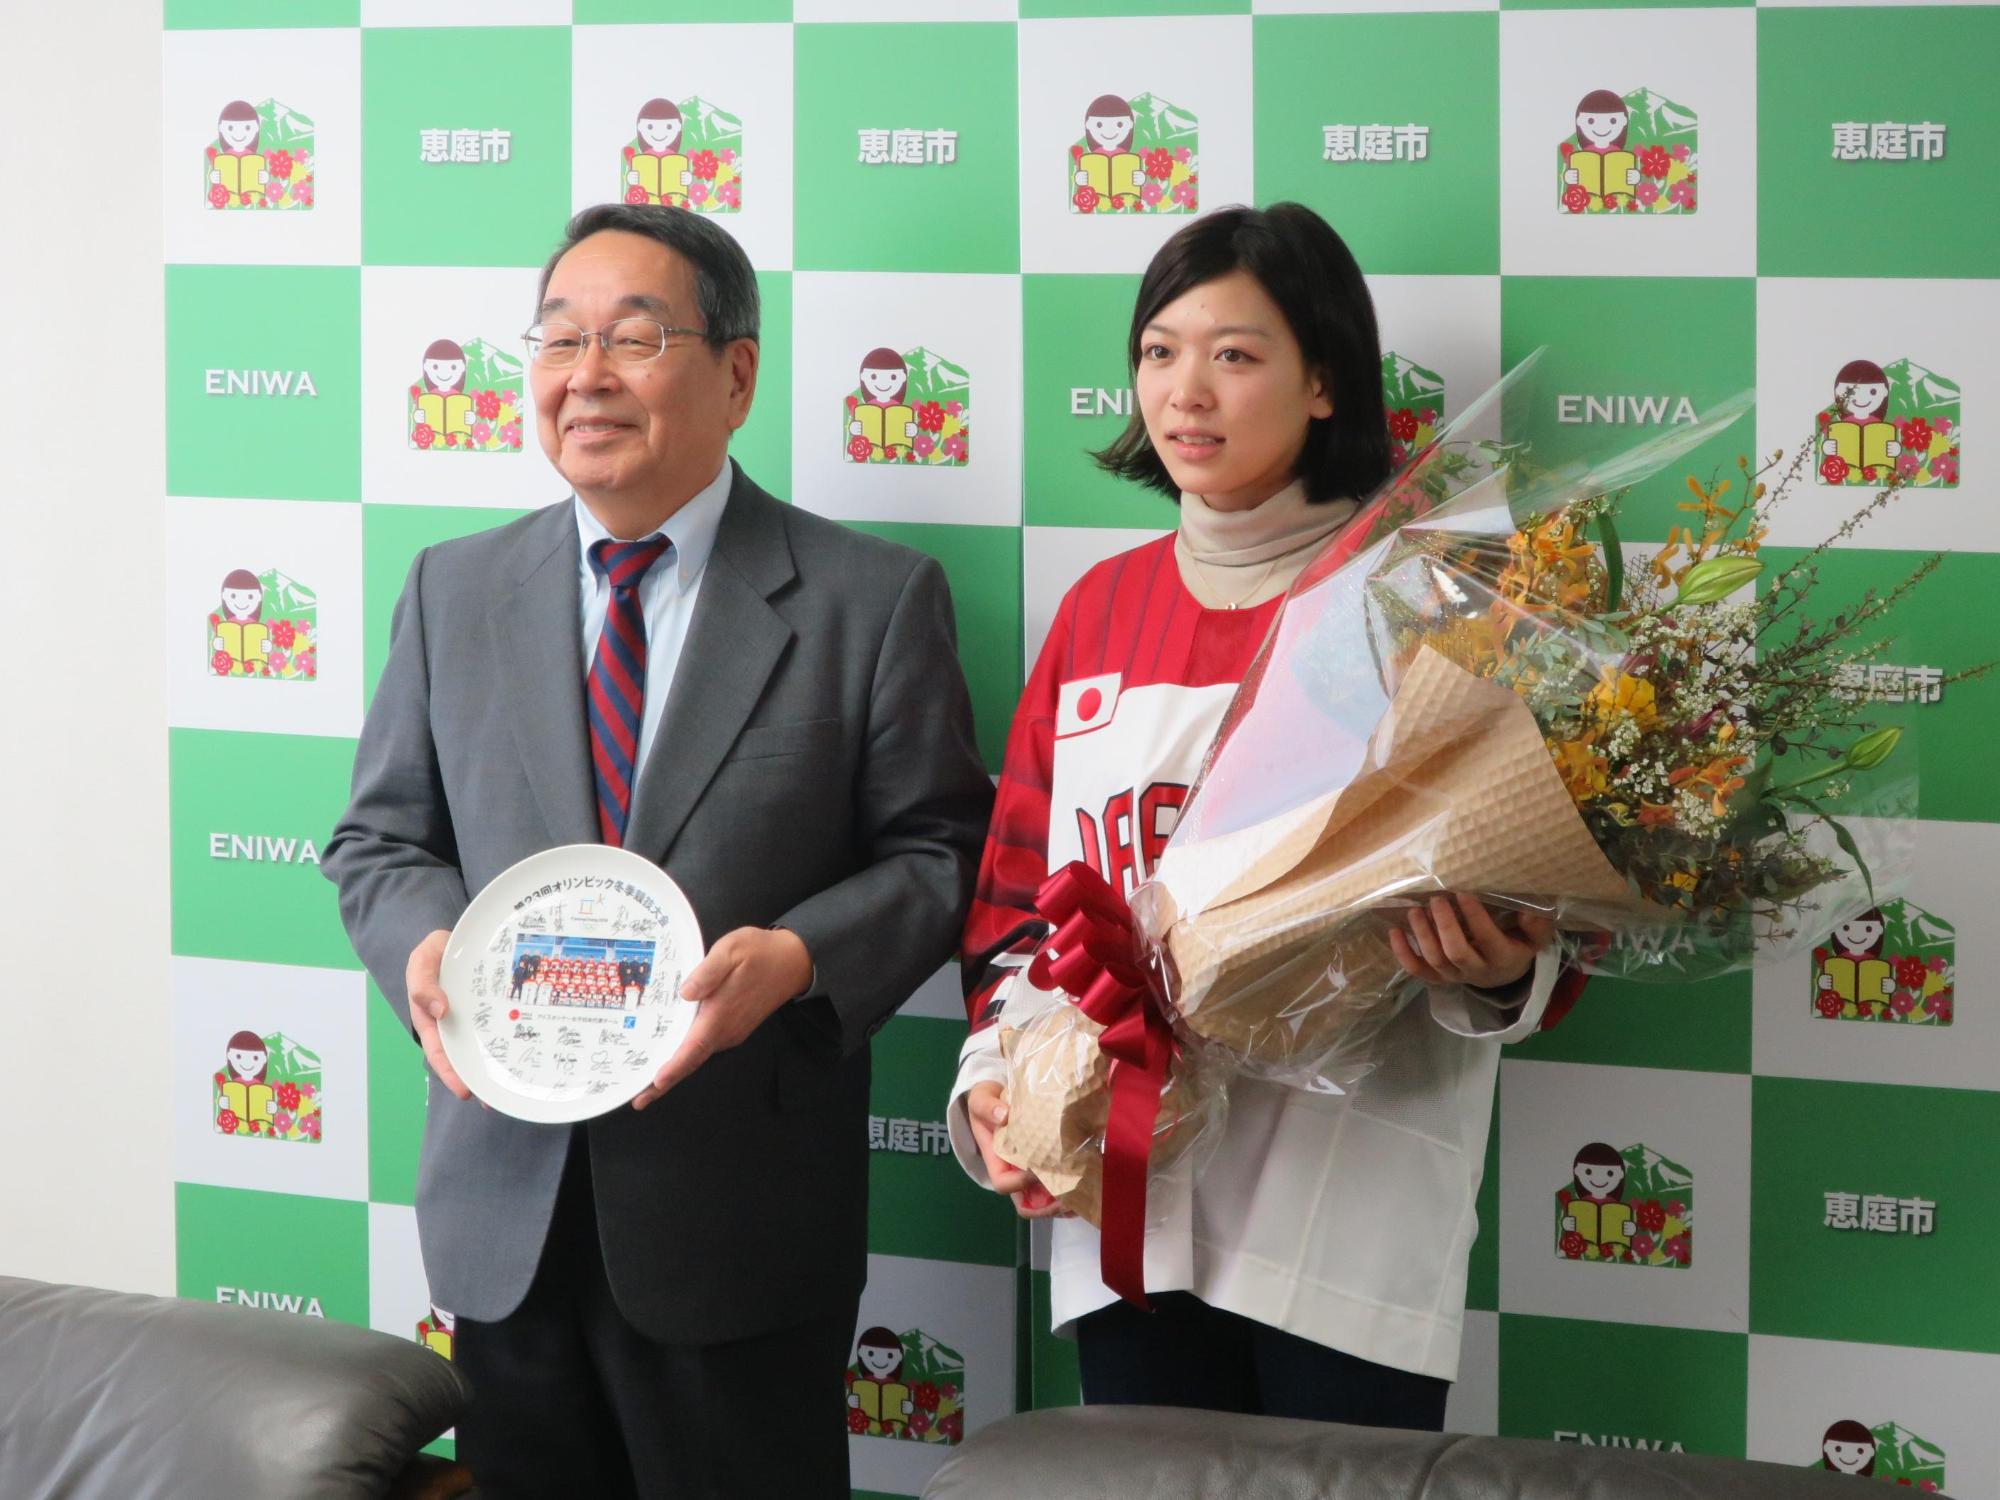 アイスホッケー女子日本代表でスマイルジャパンの一員の高涼風選手と原田市長が記念撮影している写真